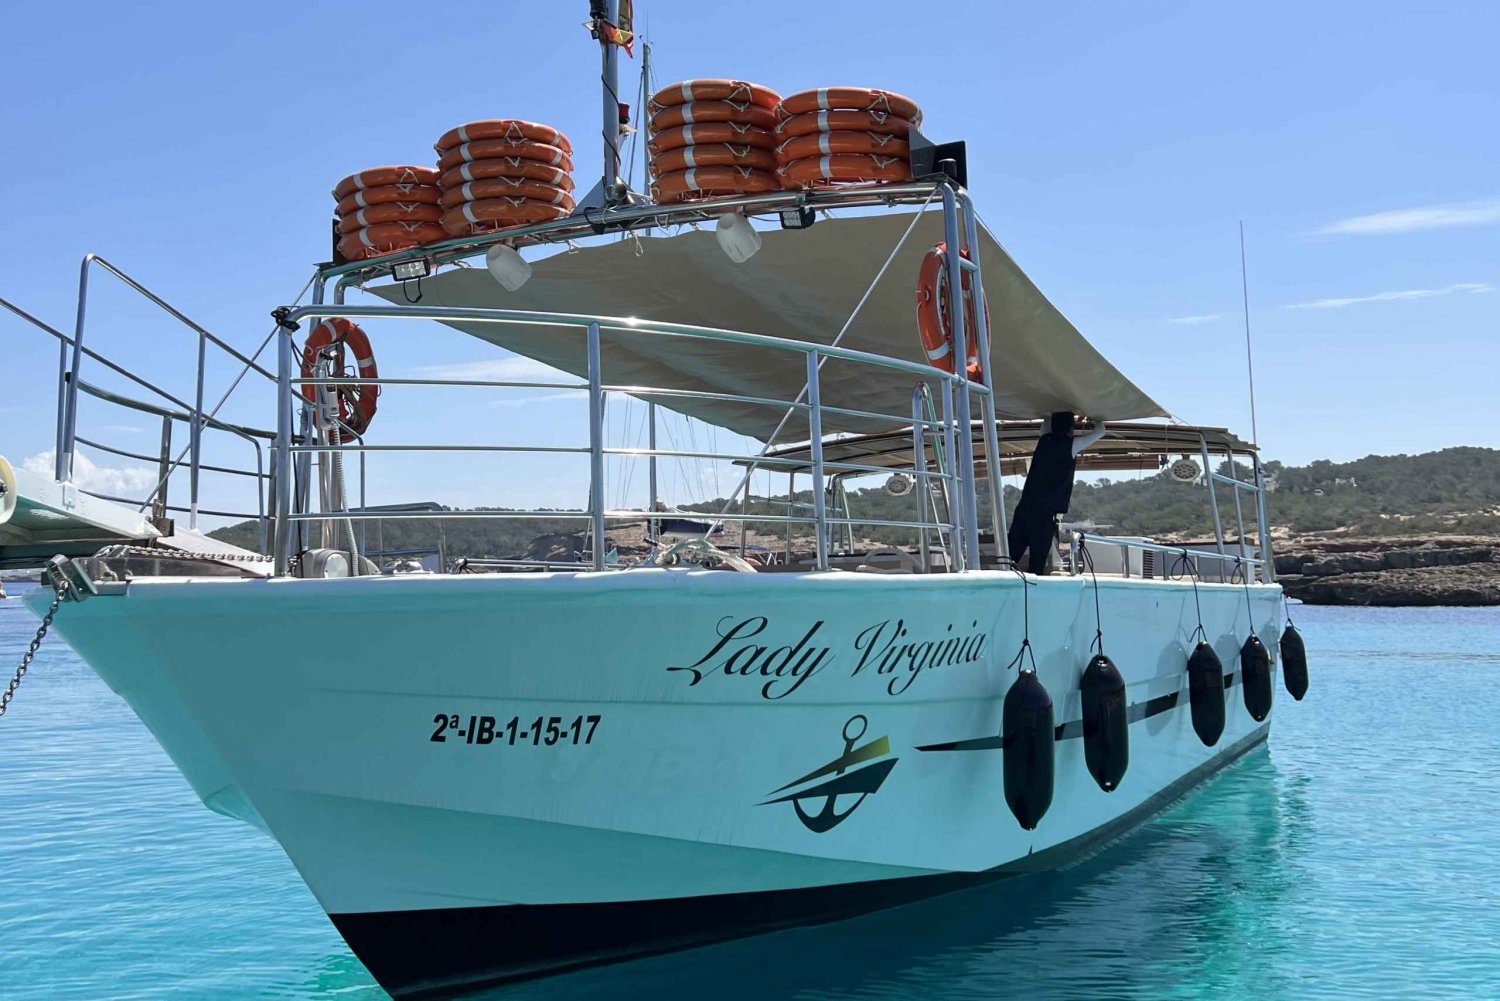 Ibiza: Crucero panorámico con tapas y bebidas